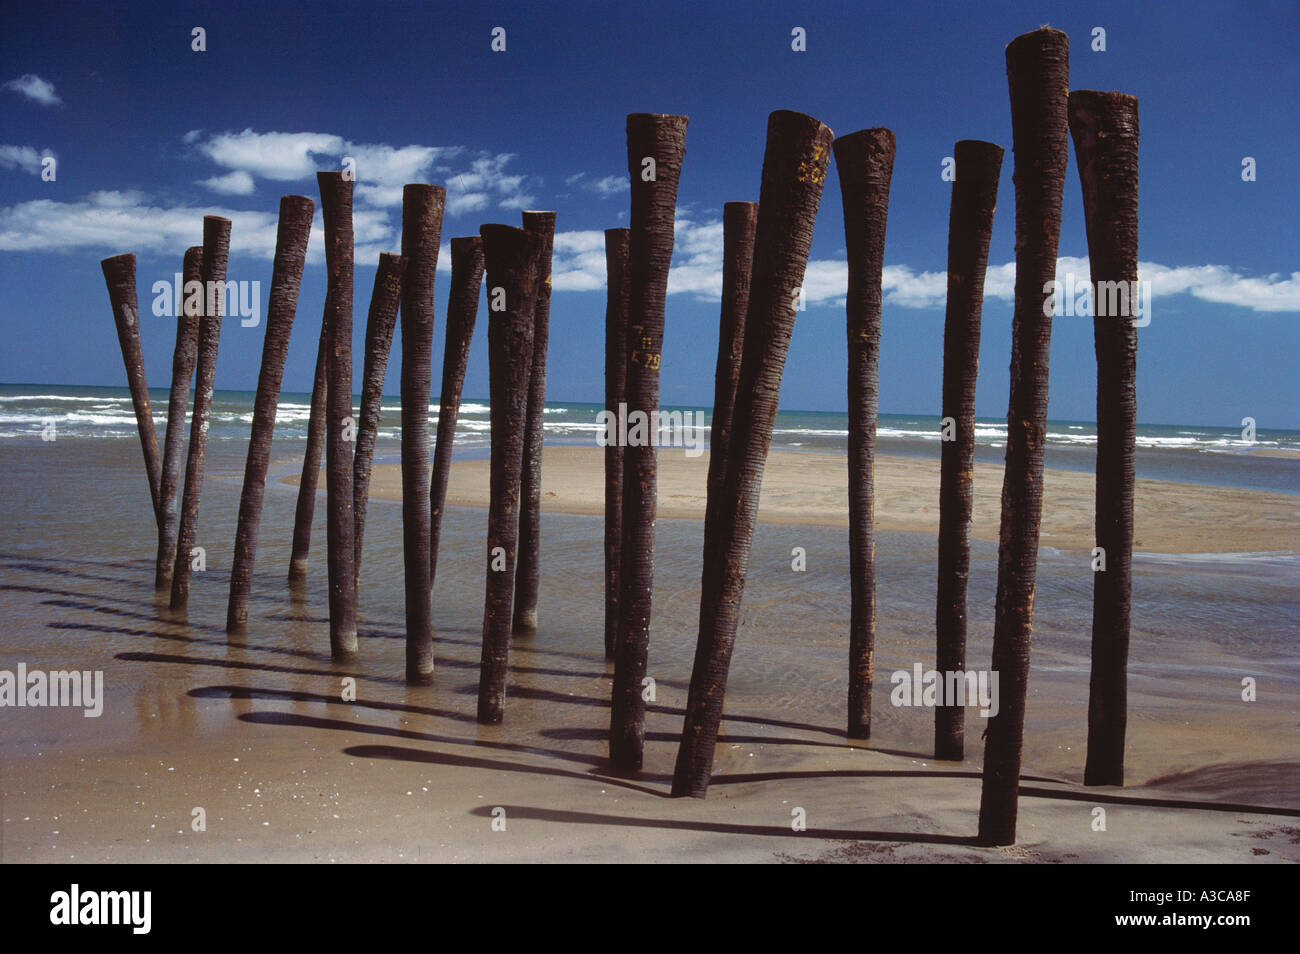 Zwanzig umgedrehte Palmenstämme lustiger ungewöhnlicher Humor seltsamer Karaikal indischer Strand Sand Meer Blau Himmel weiß Wolken Indien Konzept Stockfoto